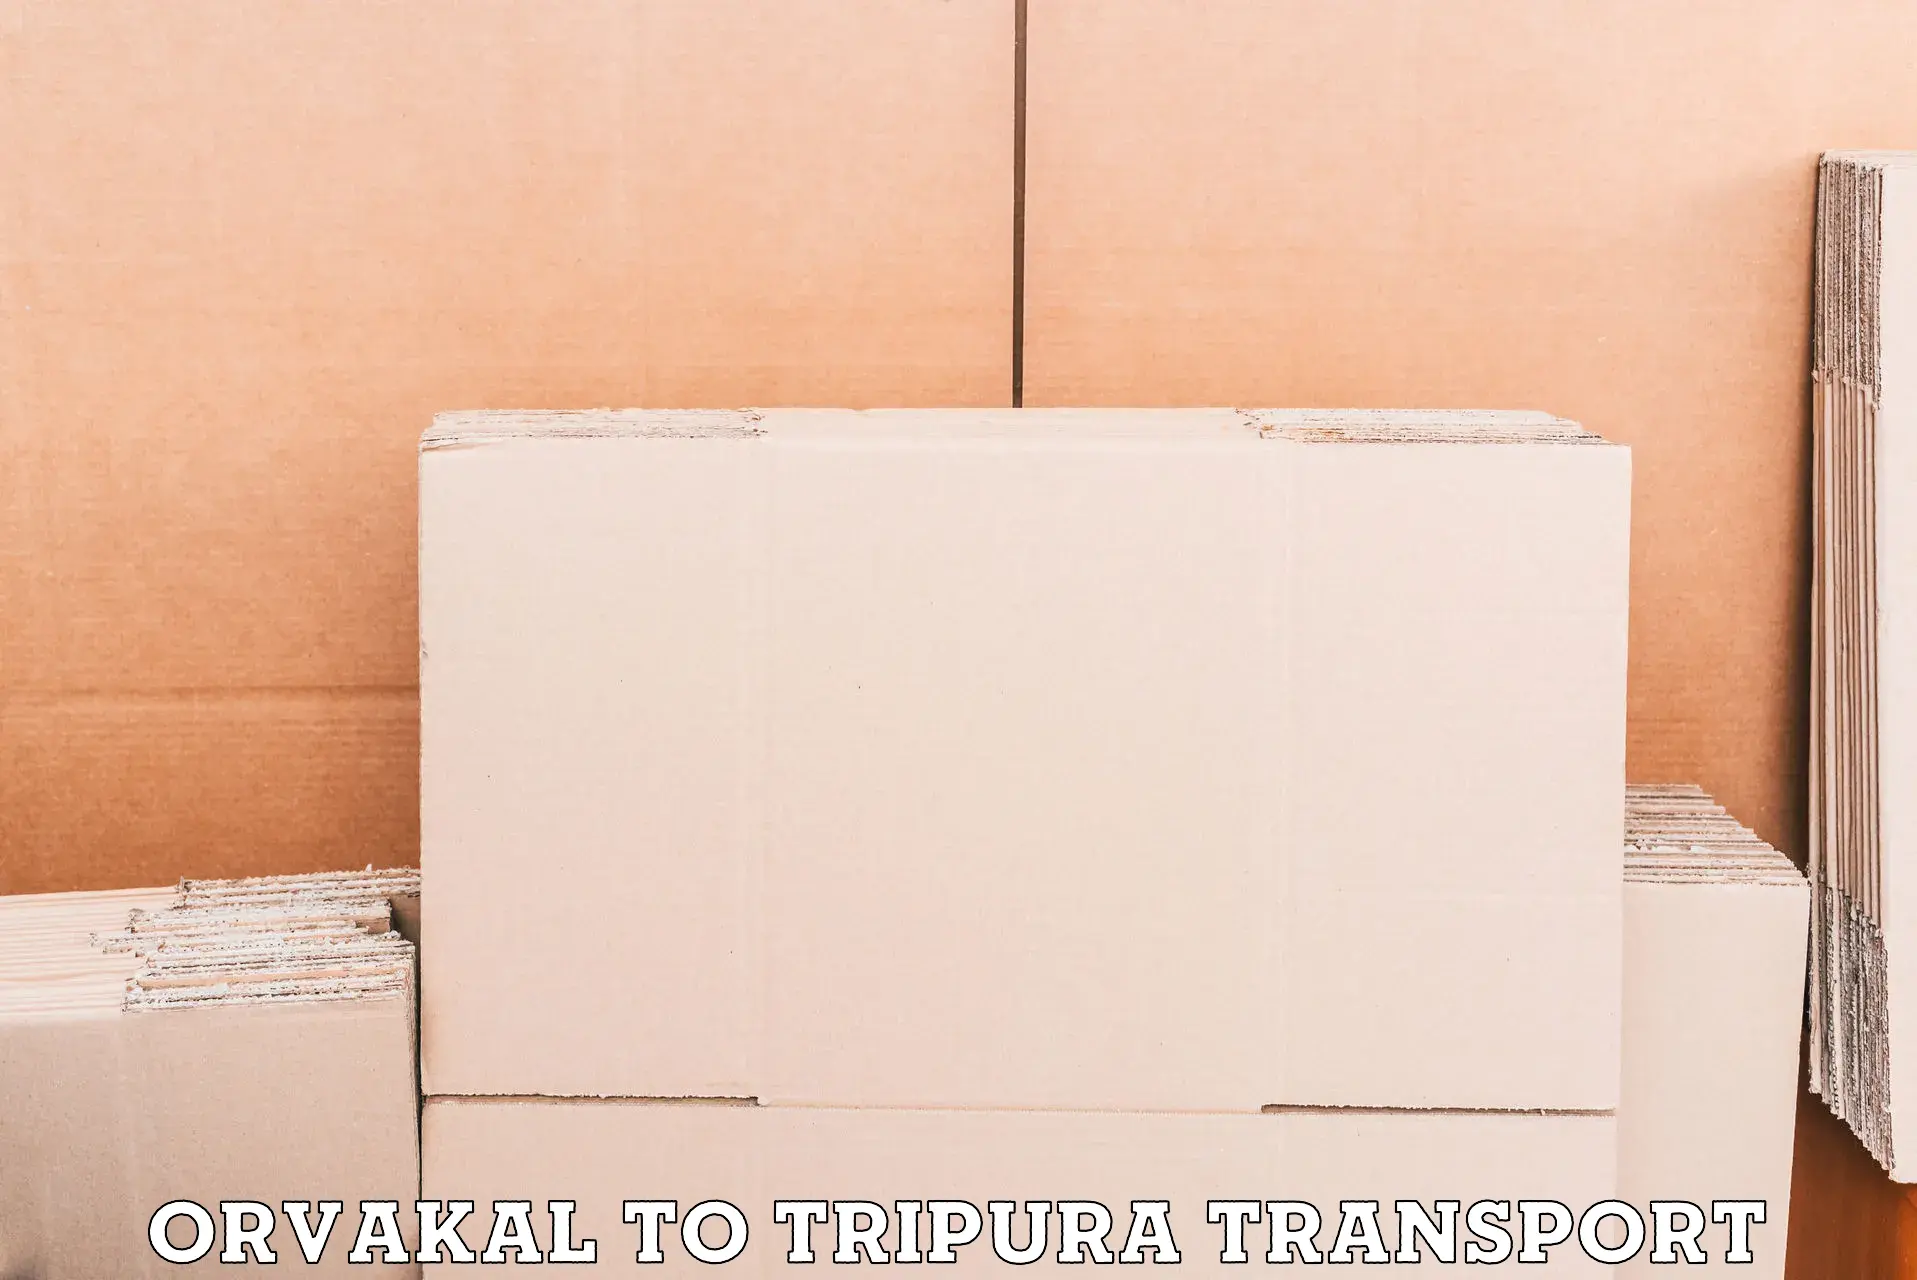 Two wheeler transport services Orvakal to Sonamura